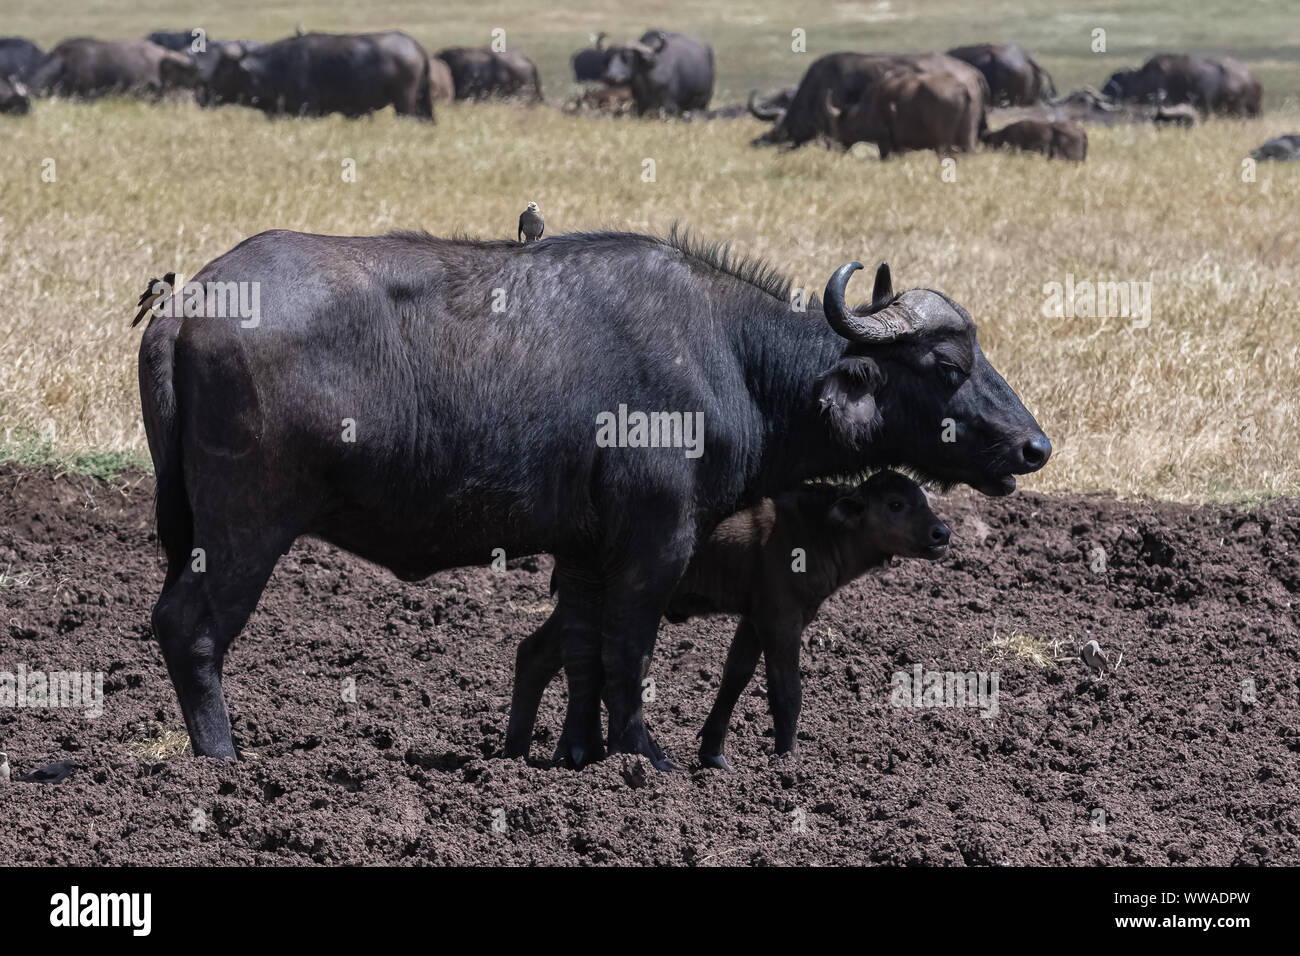 Les buffles, la mère et son bébé en Tanzanie, avec les oiseaux qui se nourrissent de parasites sur la peau du bison Banque D'Images